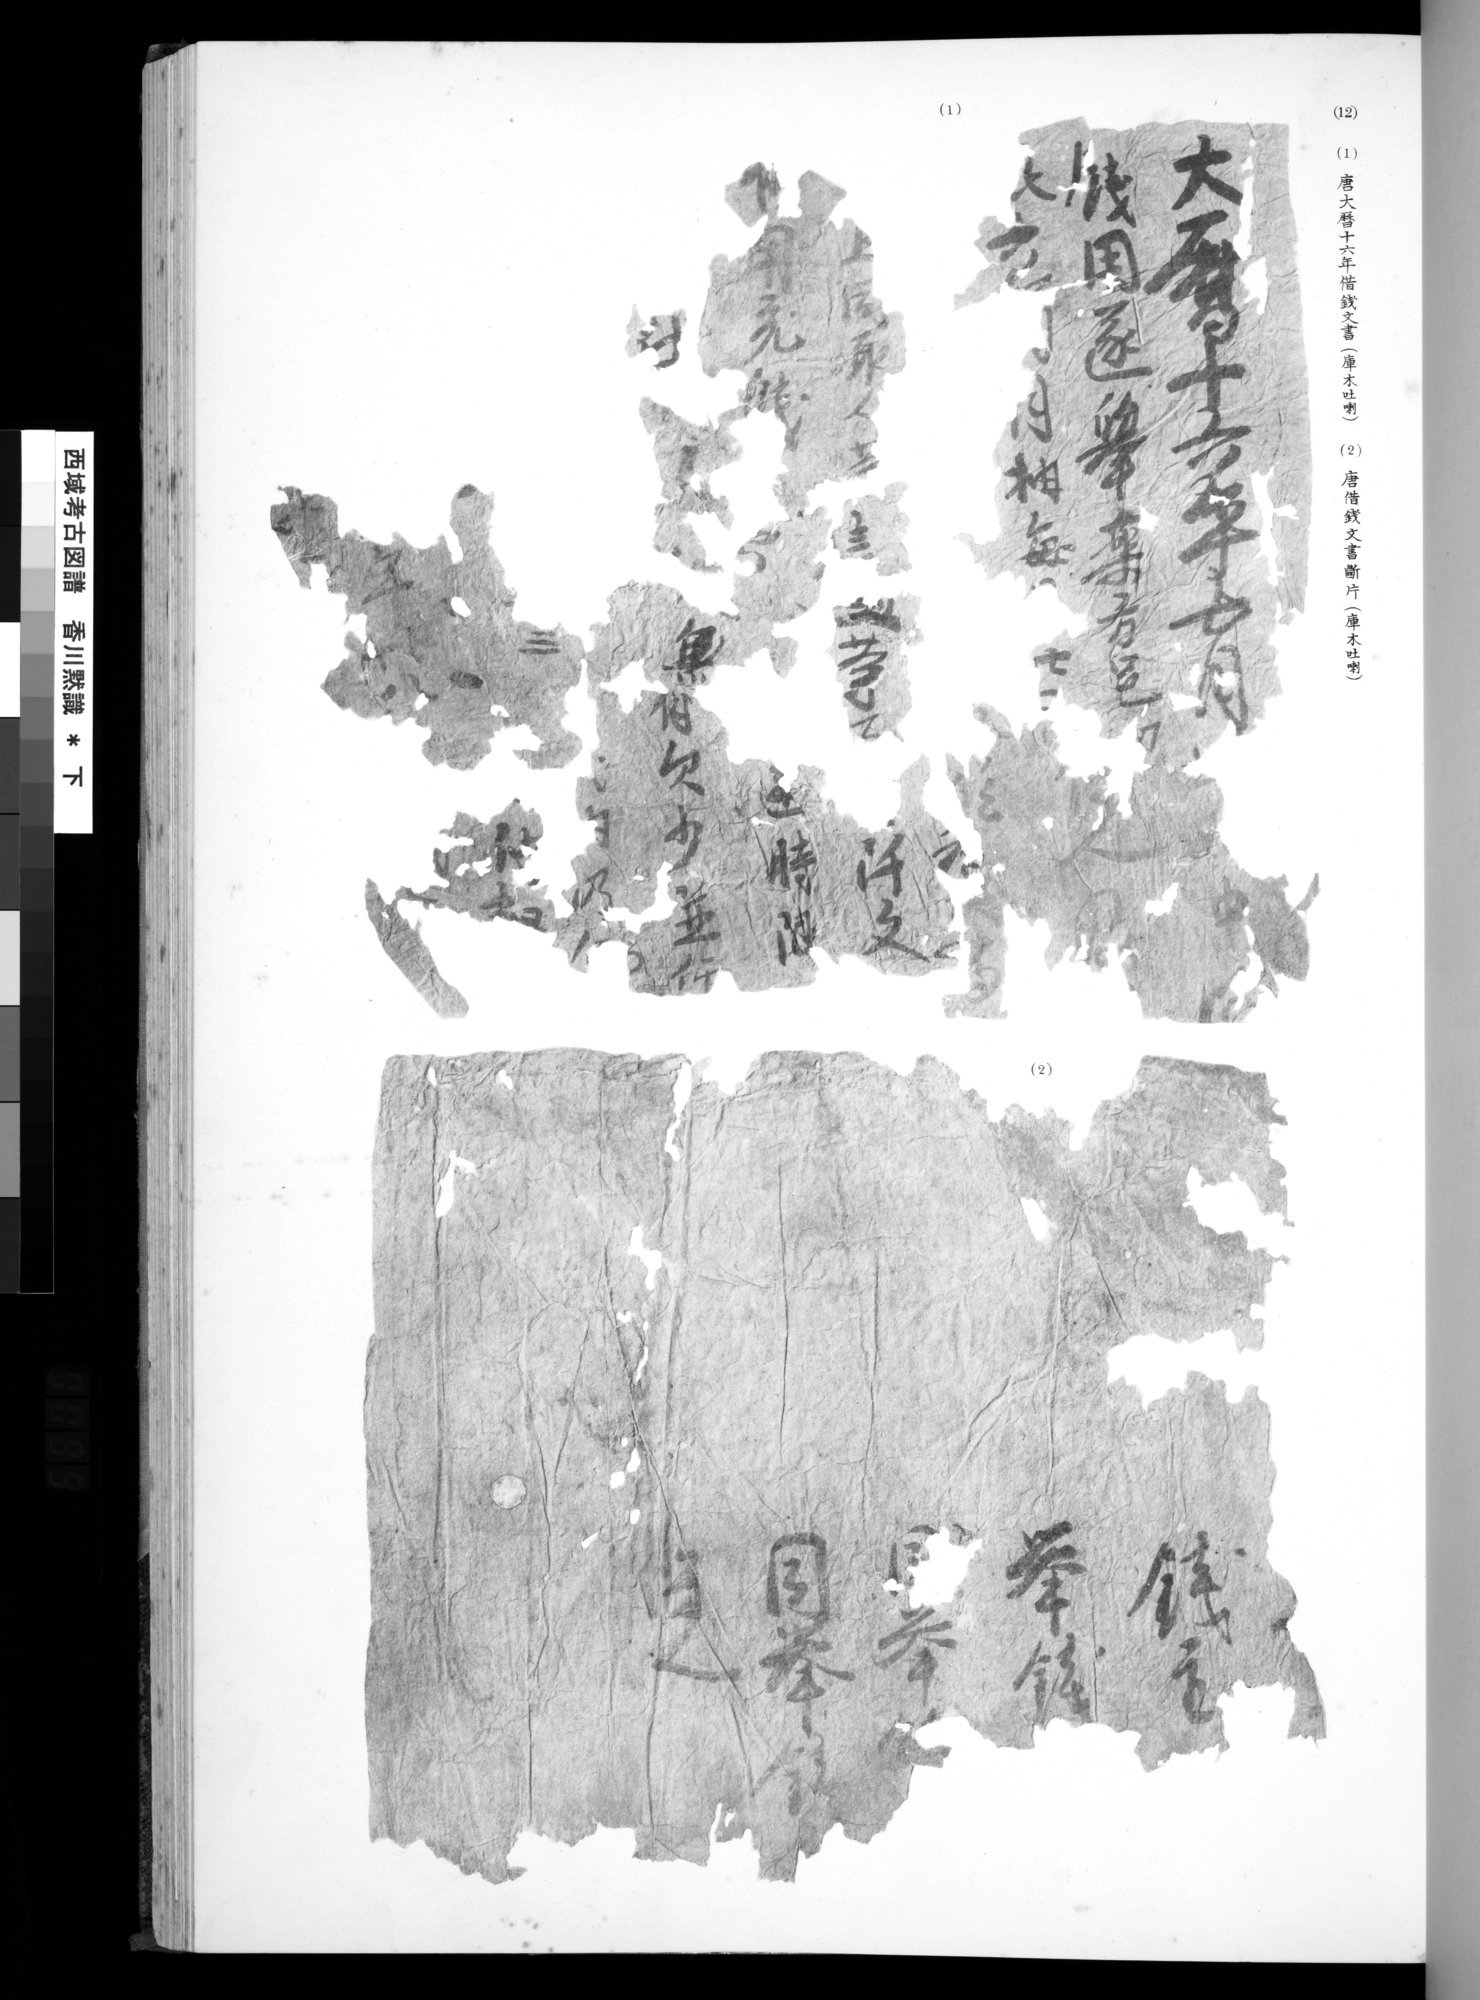 西域考古図譜 : vol.2 / Page 197 (Grayscale High Resolution Image)